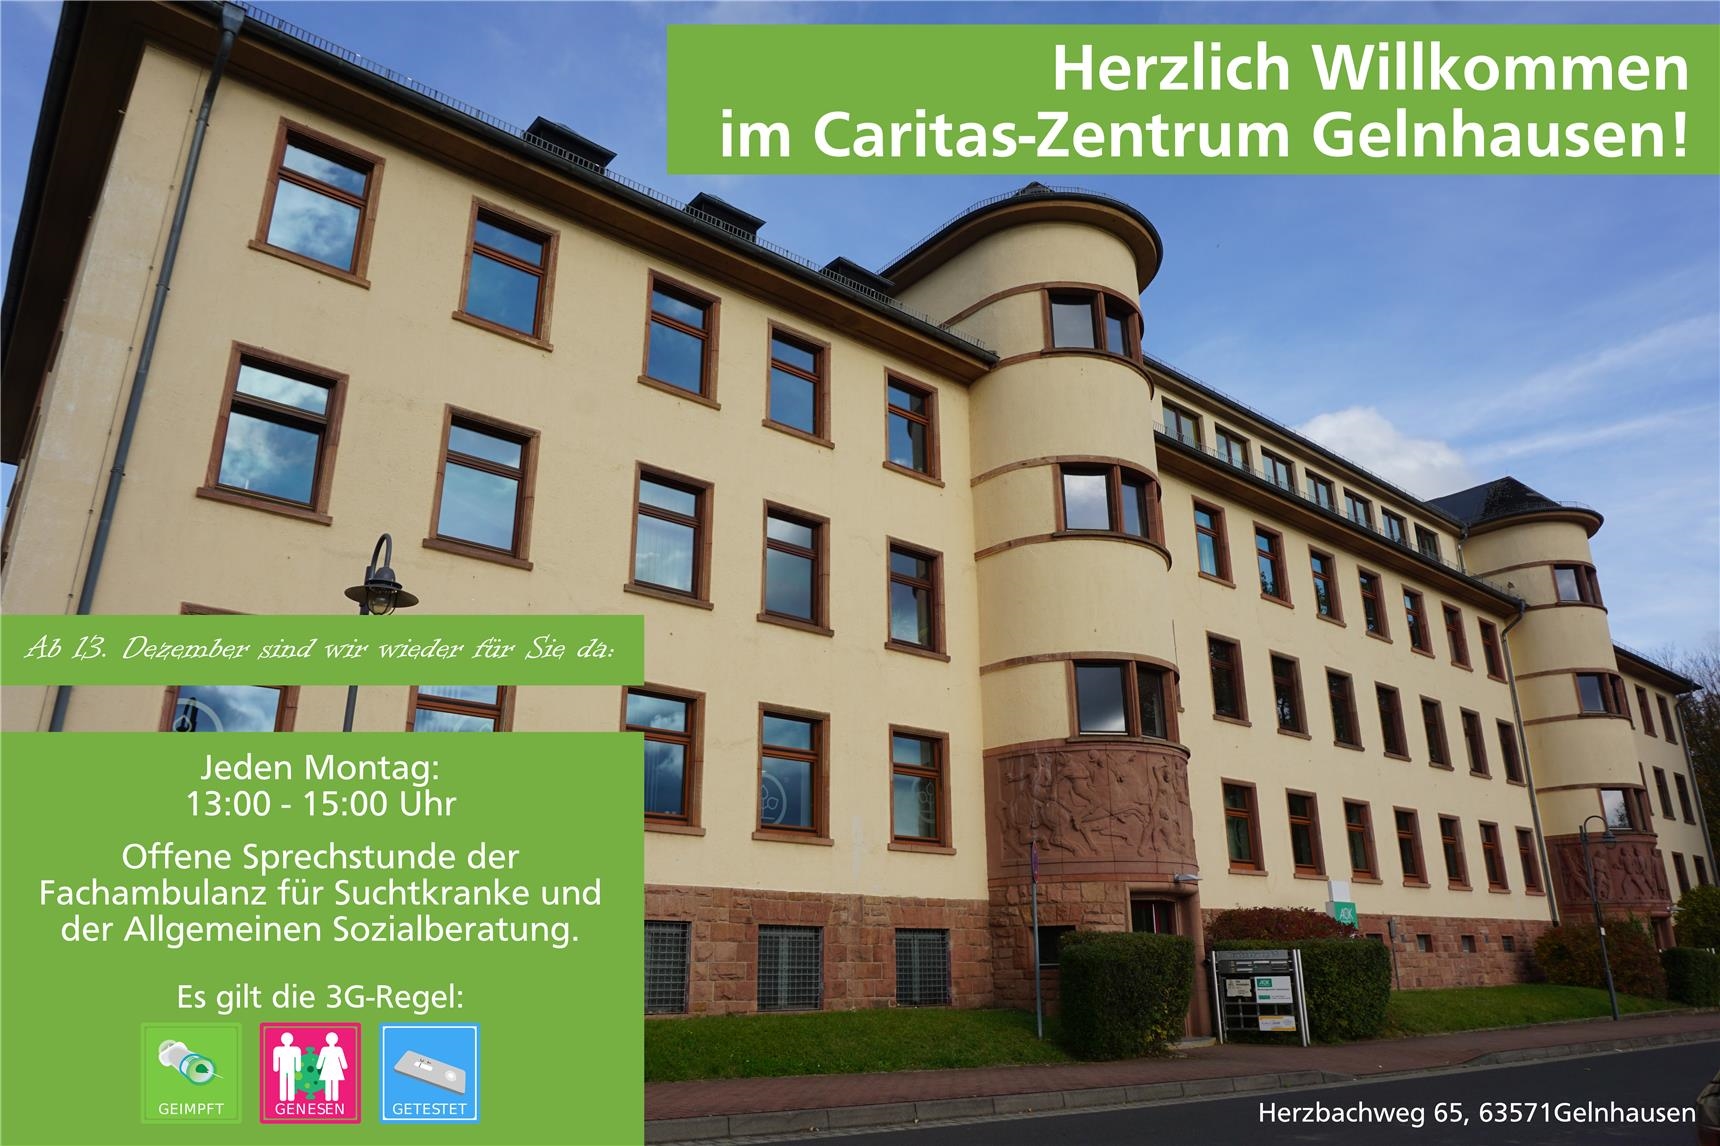 Ab dem 13.12. finden immer montags, zwischen 13 und 15 Uhr, die offenen Sprechstunden der Fachambulanz für Suchtkranke und der Allgemeinen Sozialberatung im Caritas-Zentrum Gelnhausen statt.